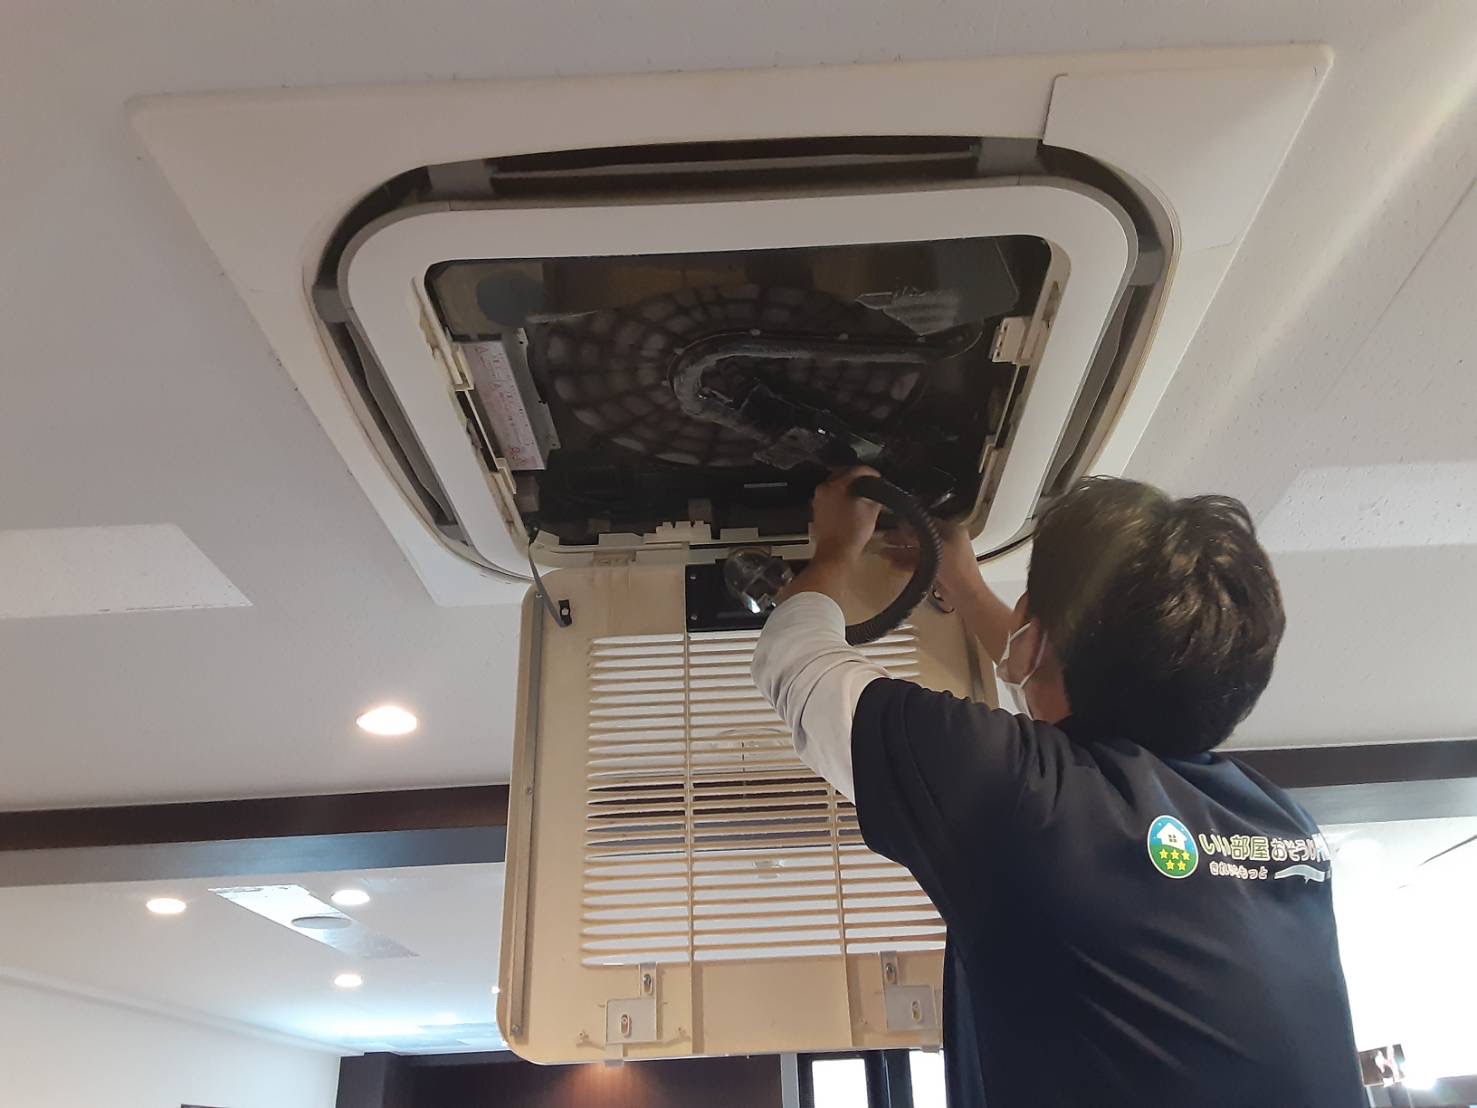 ダイキンの業務用天井埋込式４方向のお掃除機能付きエアコンのクリーニングをしてきました。